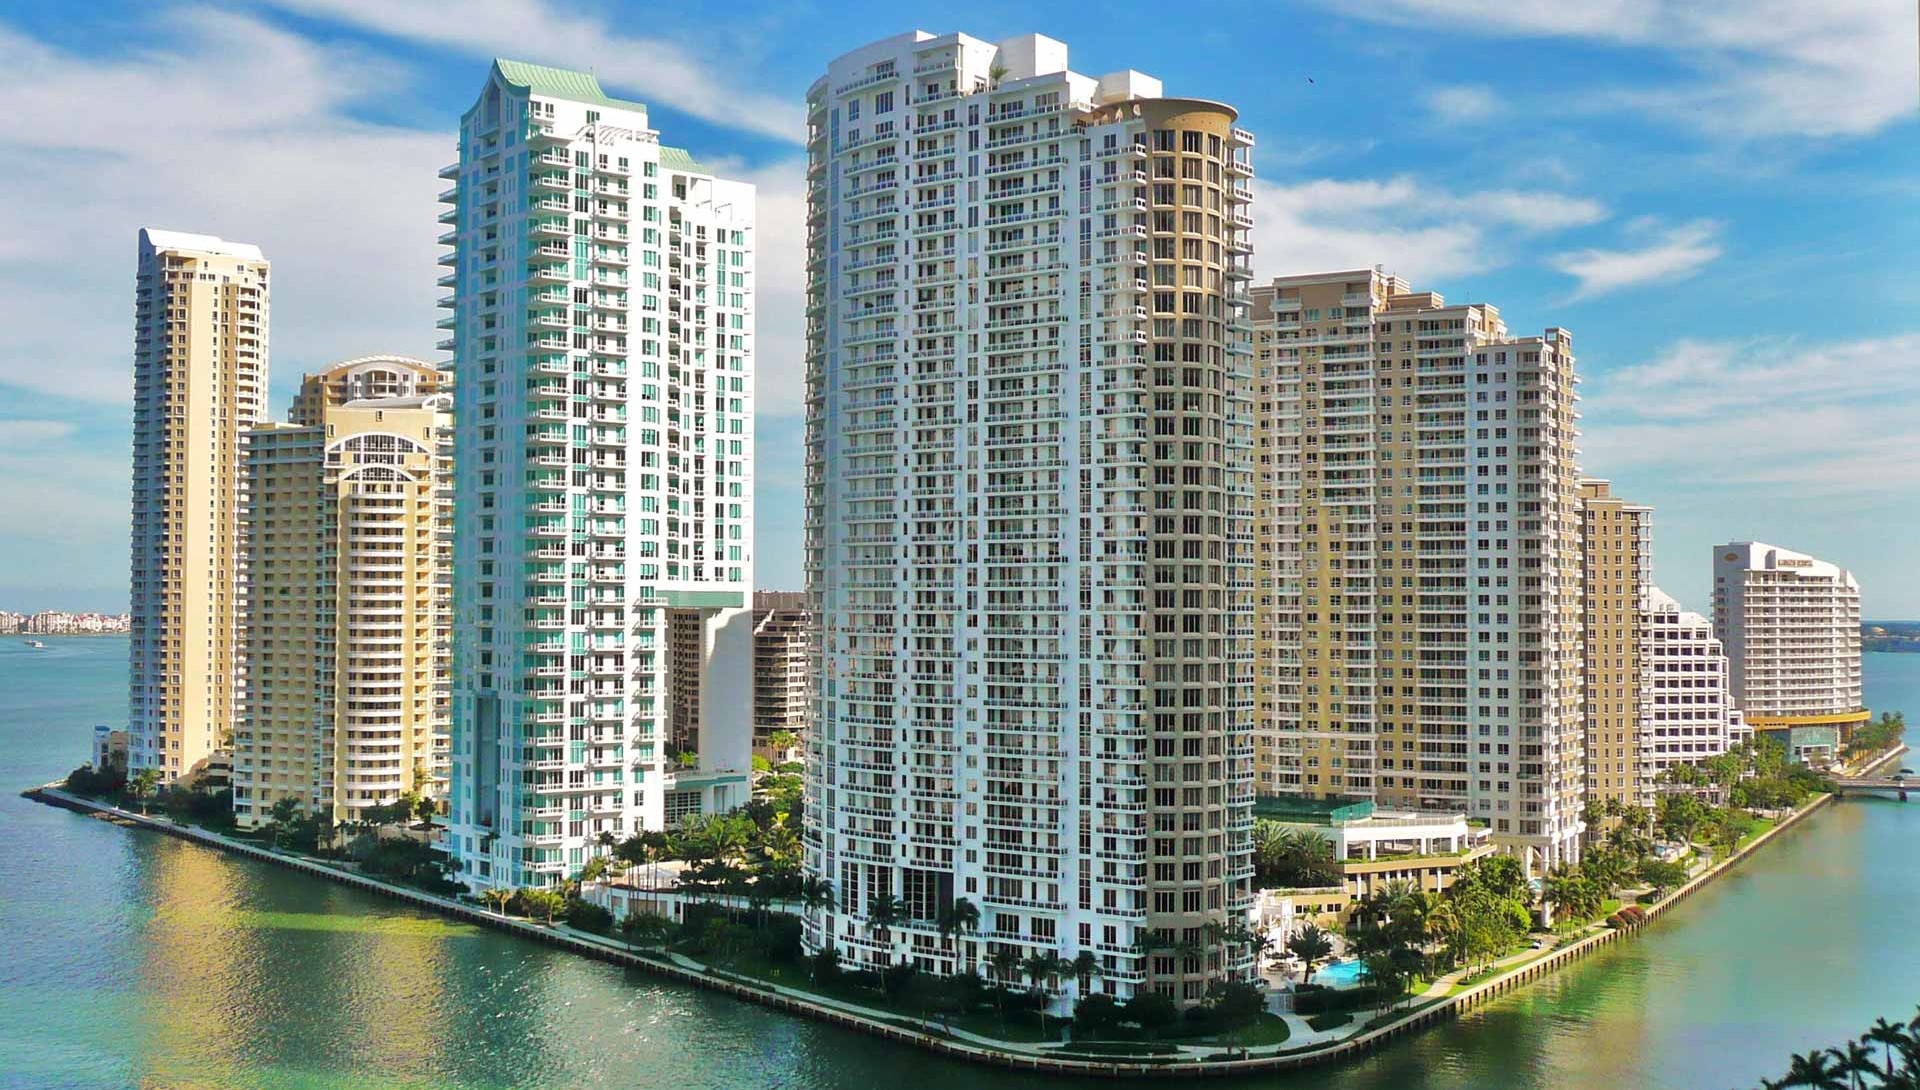 Costo de alquiler en Miami aumenta por el homeoffice